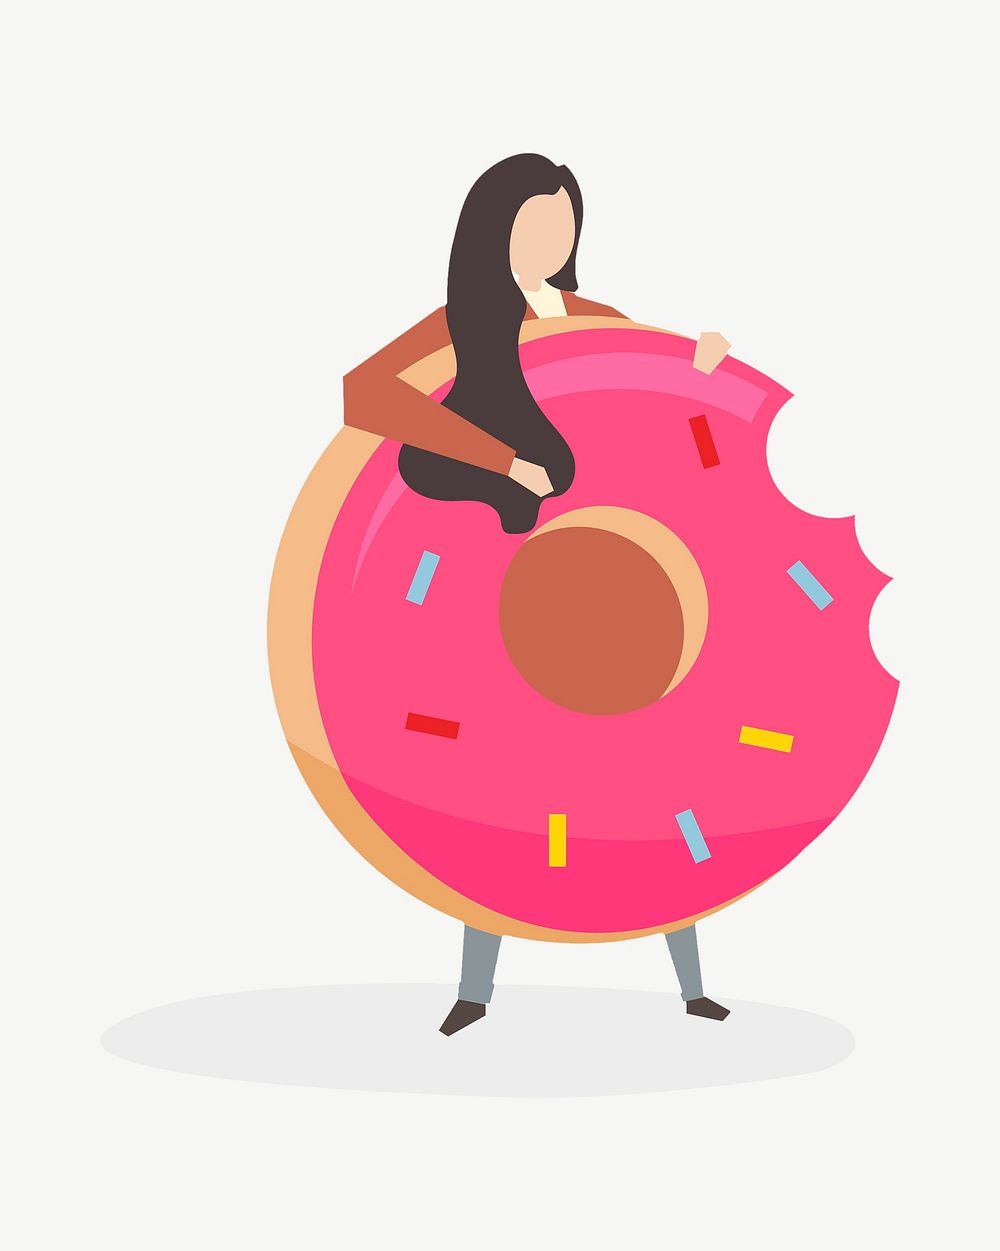 Cute donut illustration psd